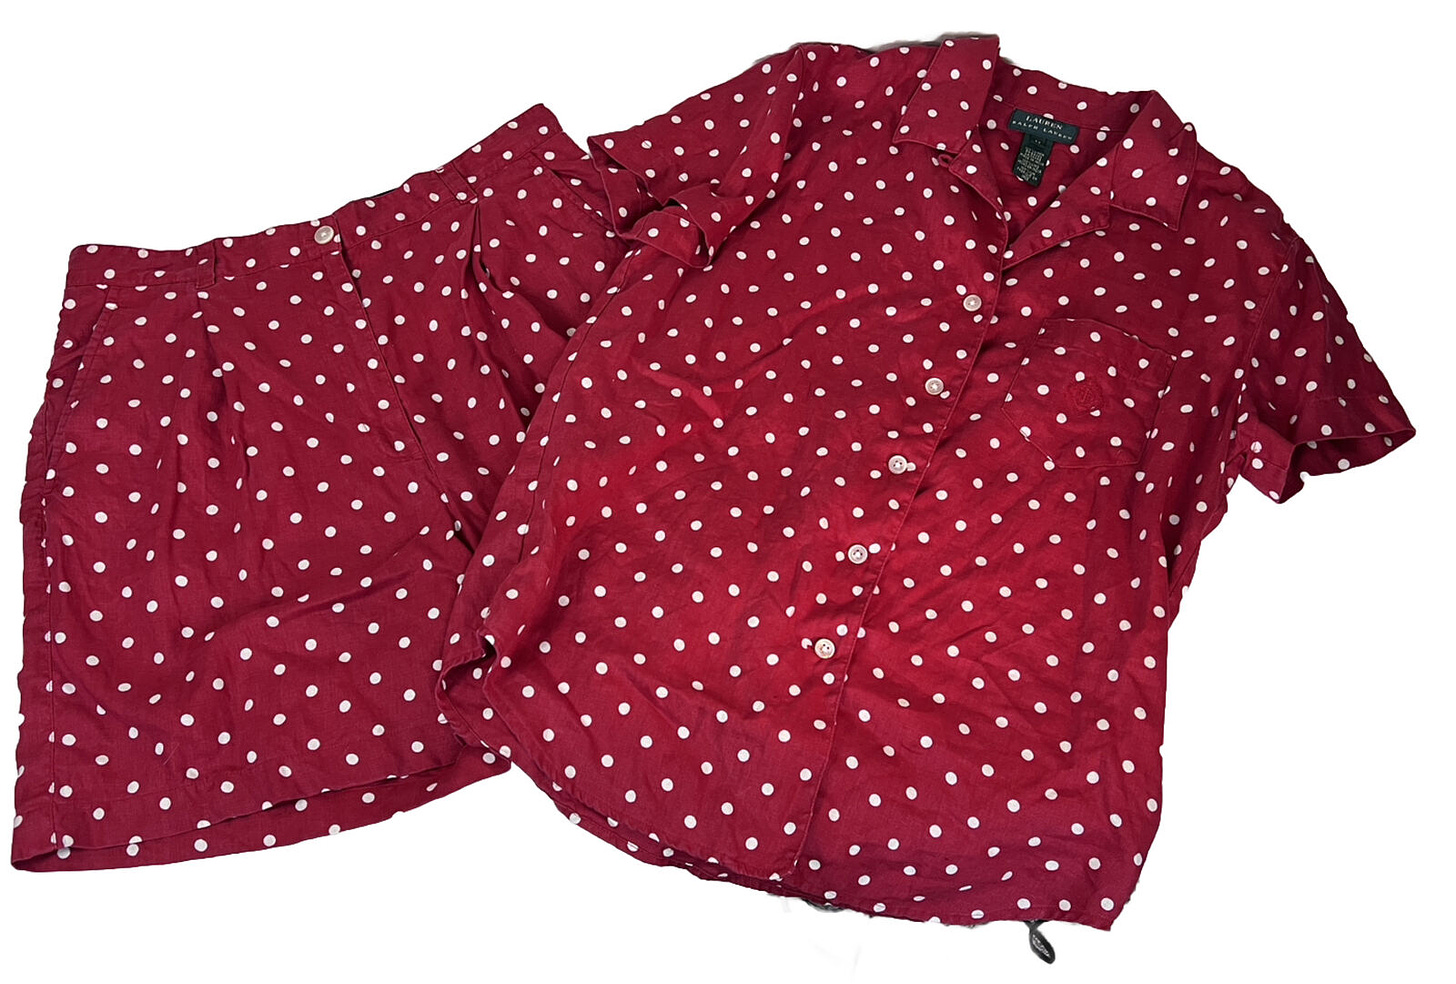 Lauren Ralph Lauren Vintage Red Polk A Dots Top/ Short Set 100% Linen Medium/12 - Picture 1 of 5